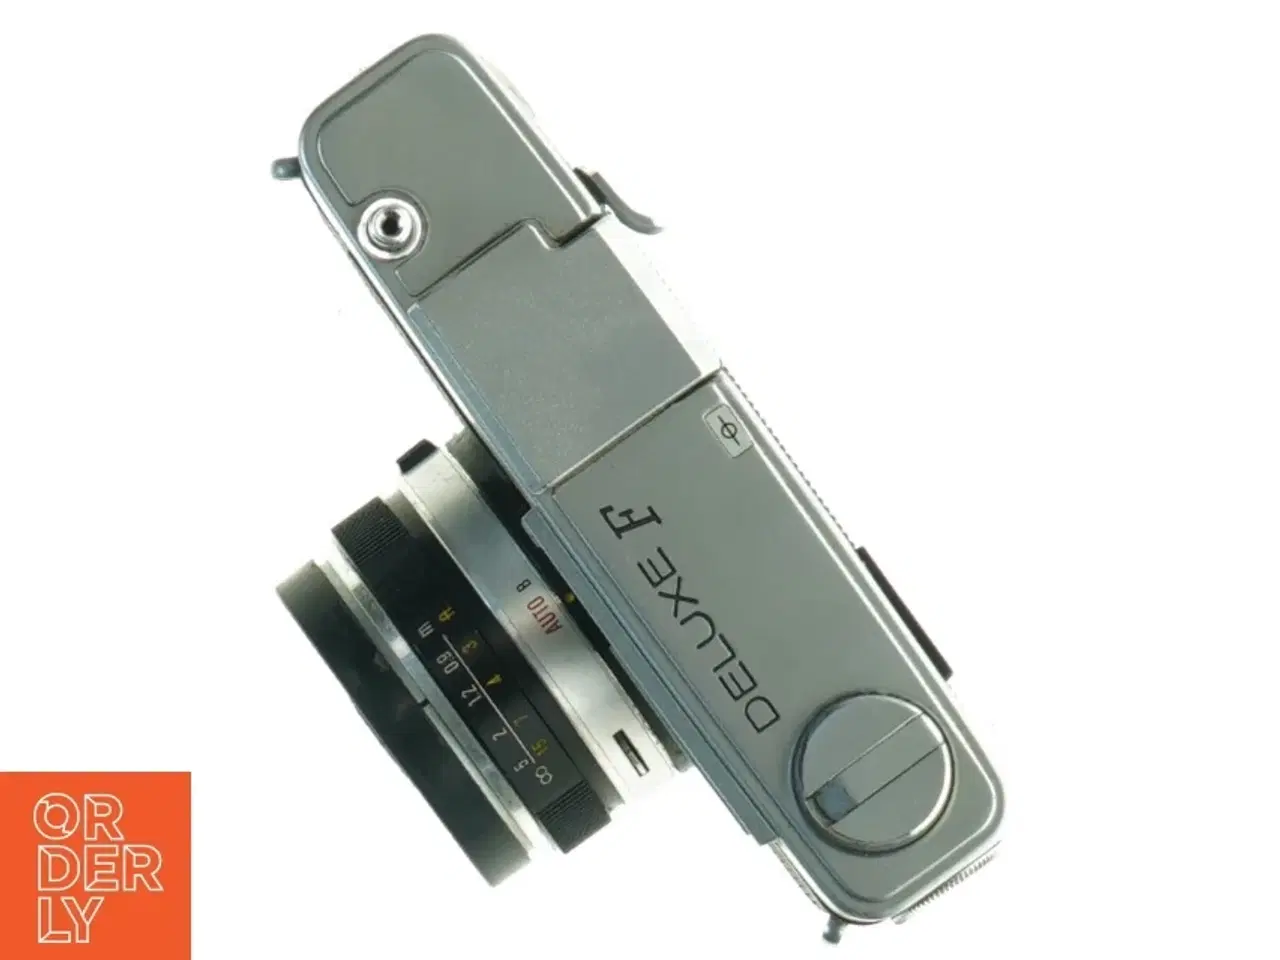 Billede 1 - Konica EE-Matic Deluxe F kamera med taske fra Konica (str. 9 x 15 cm)